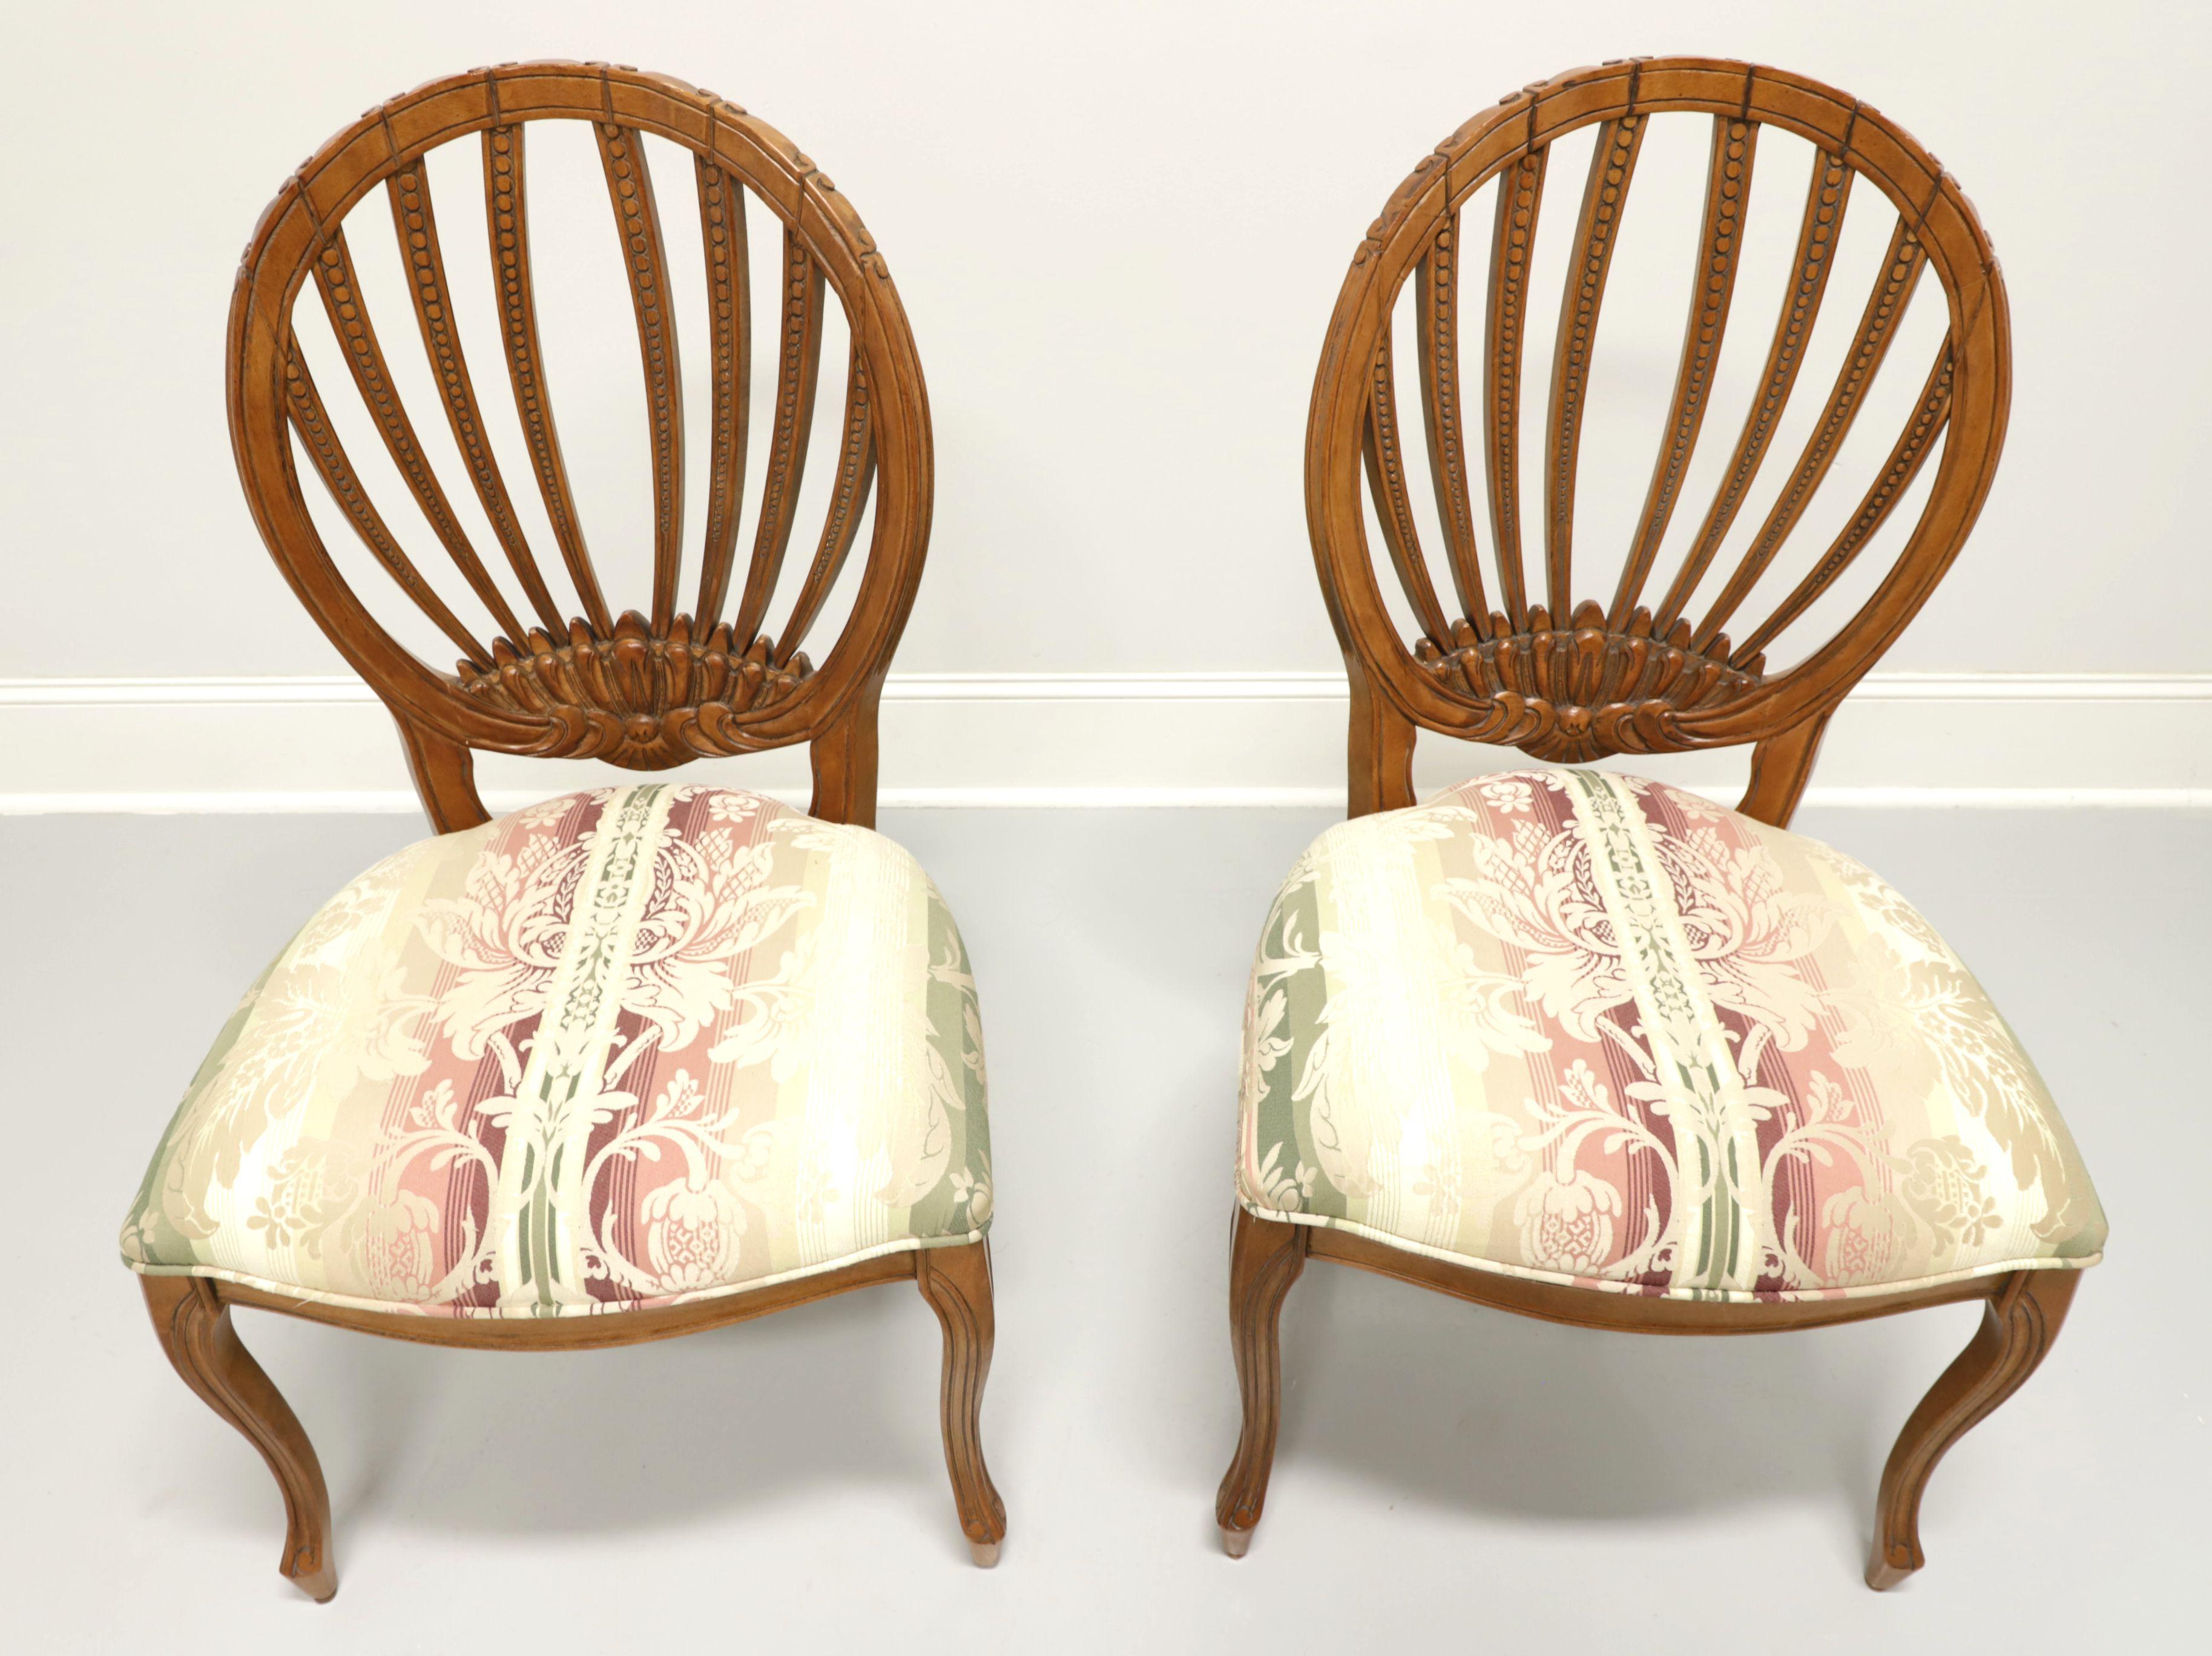 Paire de chaises d'appoint de style campagne française, fabriquées par Century Furniture, à Hickory, en Caroline du Nord, aux États-Unis. Bois dur avec une finition noyer, dossiers ovales ouverts et sculptés, sièges rembourrés en tissu à motif